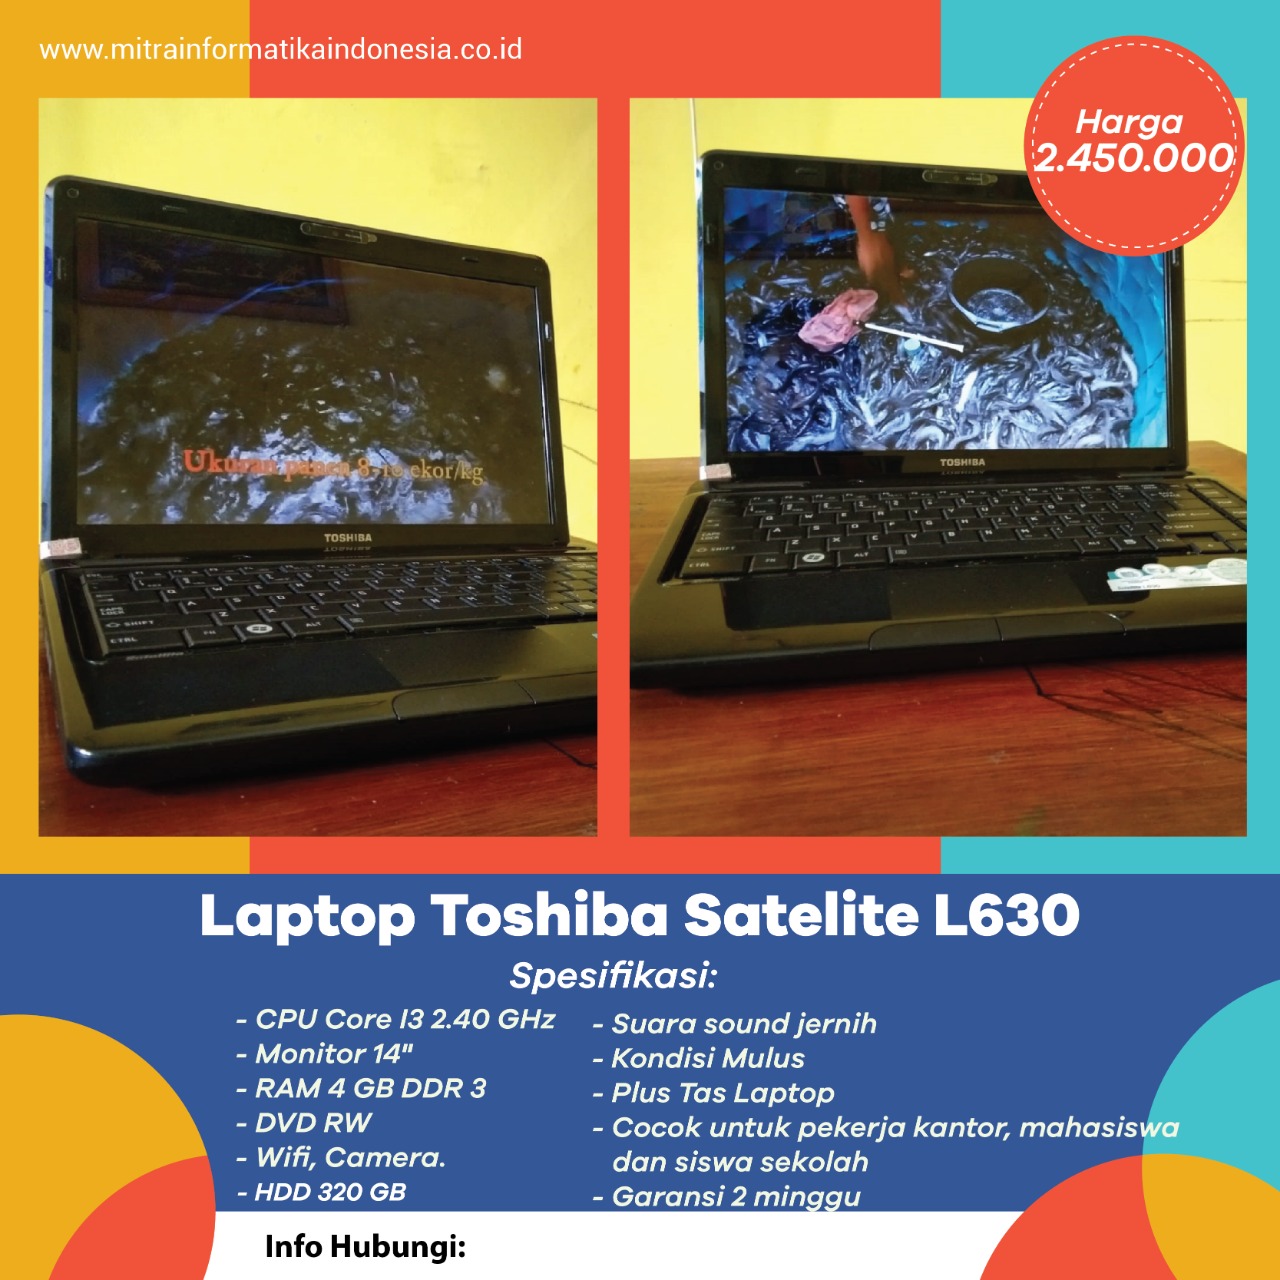 Dijual Laptop Toshiba Satelite L630 Murah dan Berkualitas